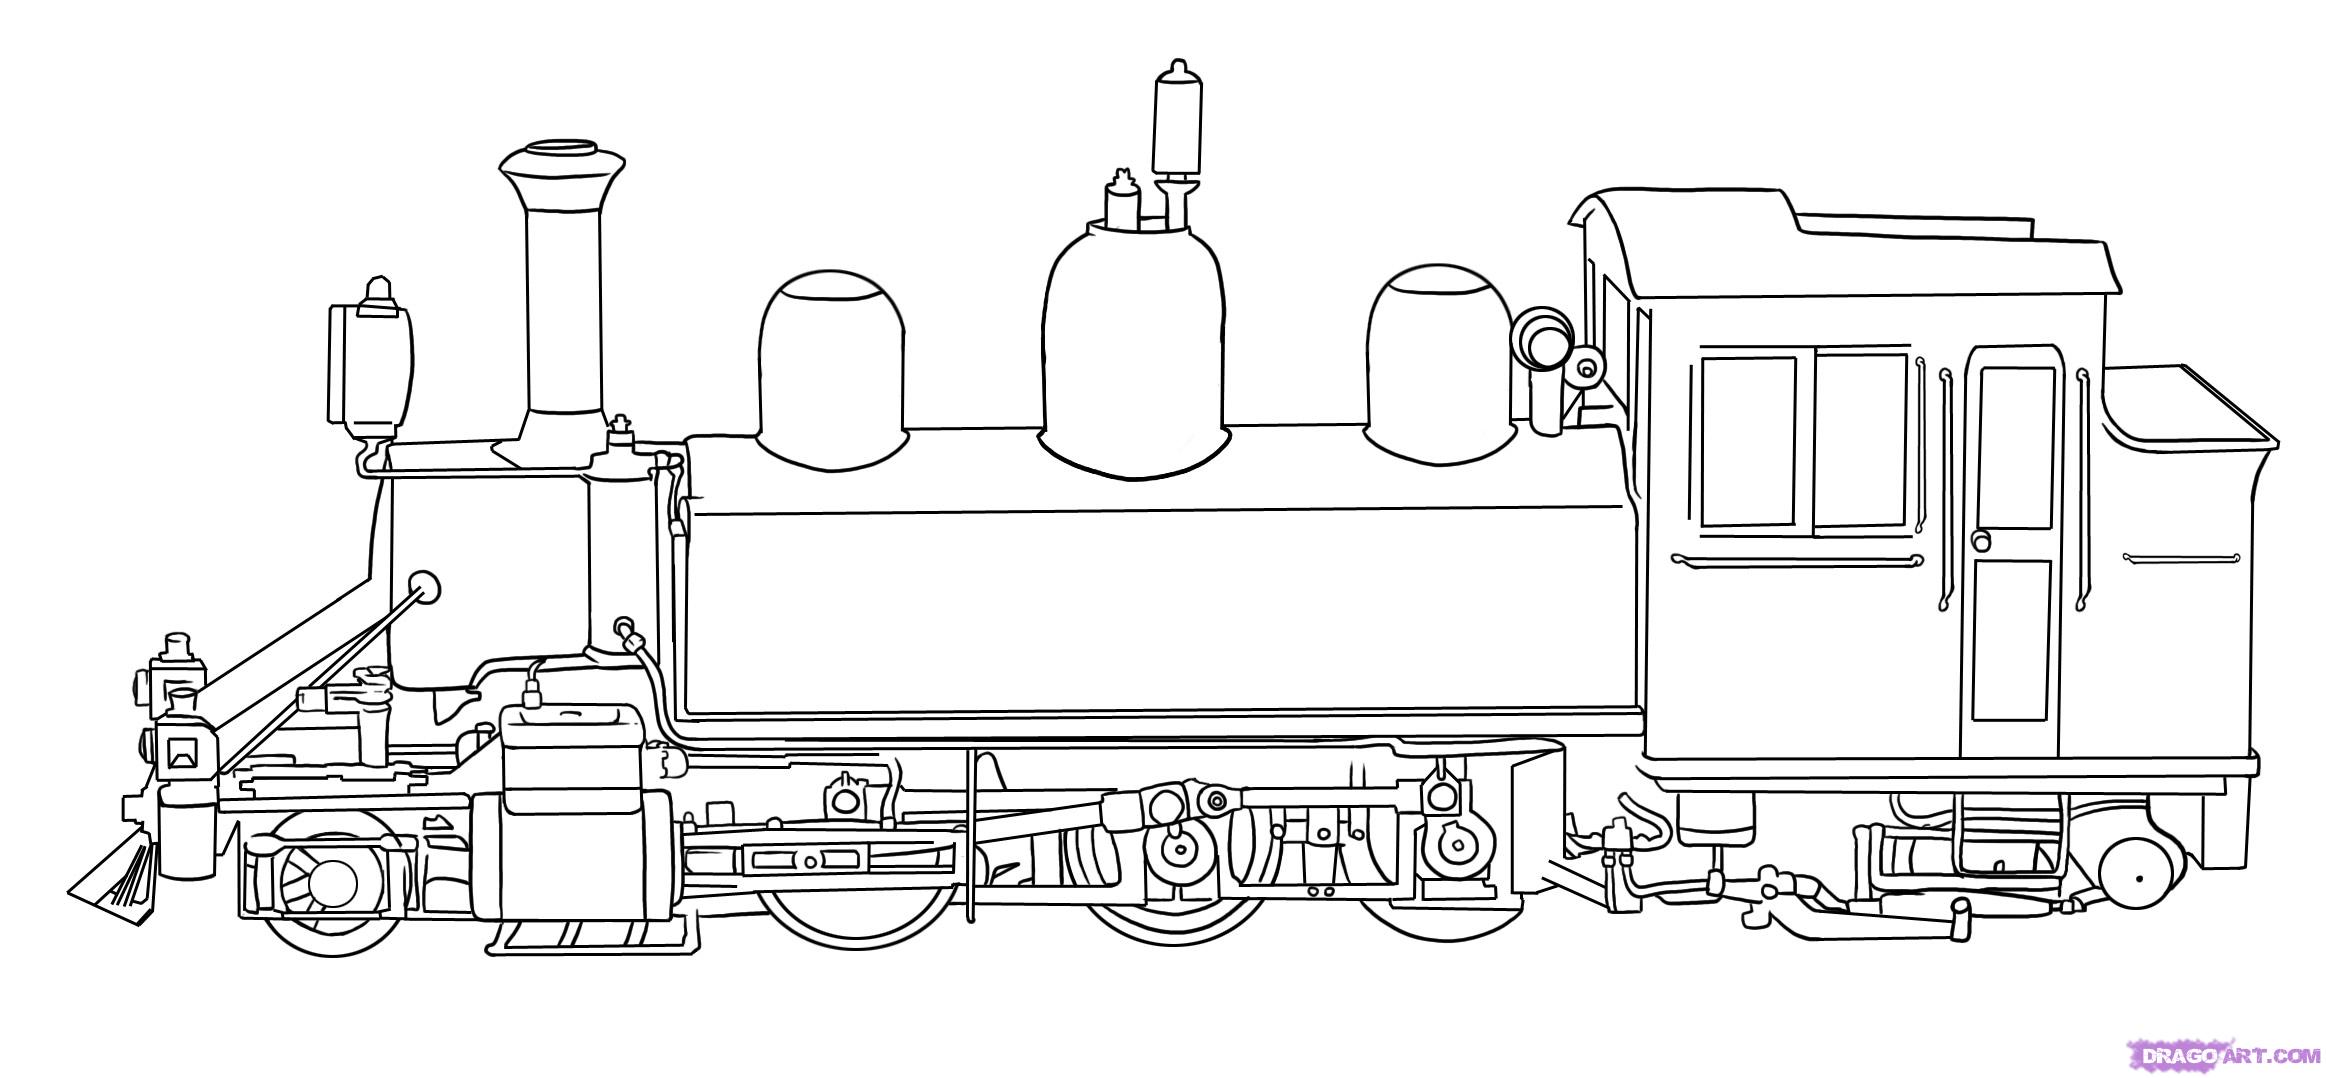 Dessin #16414 - Une Jolie image de locomotive a imprimer pour les enfants